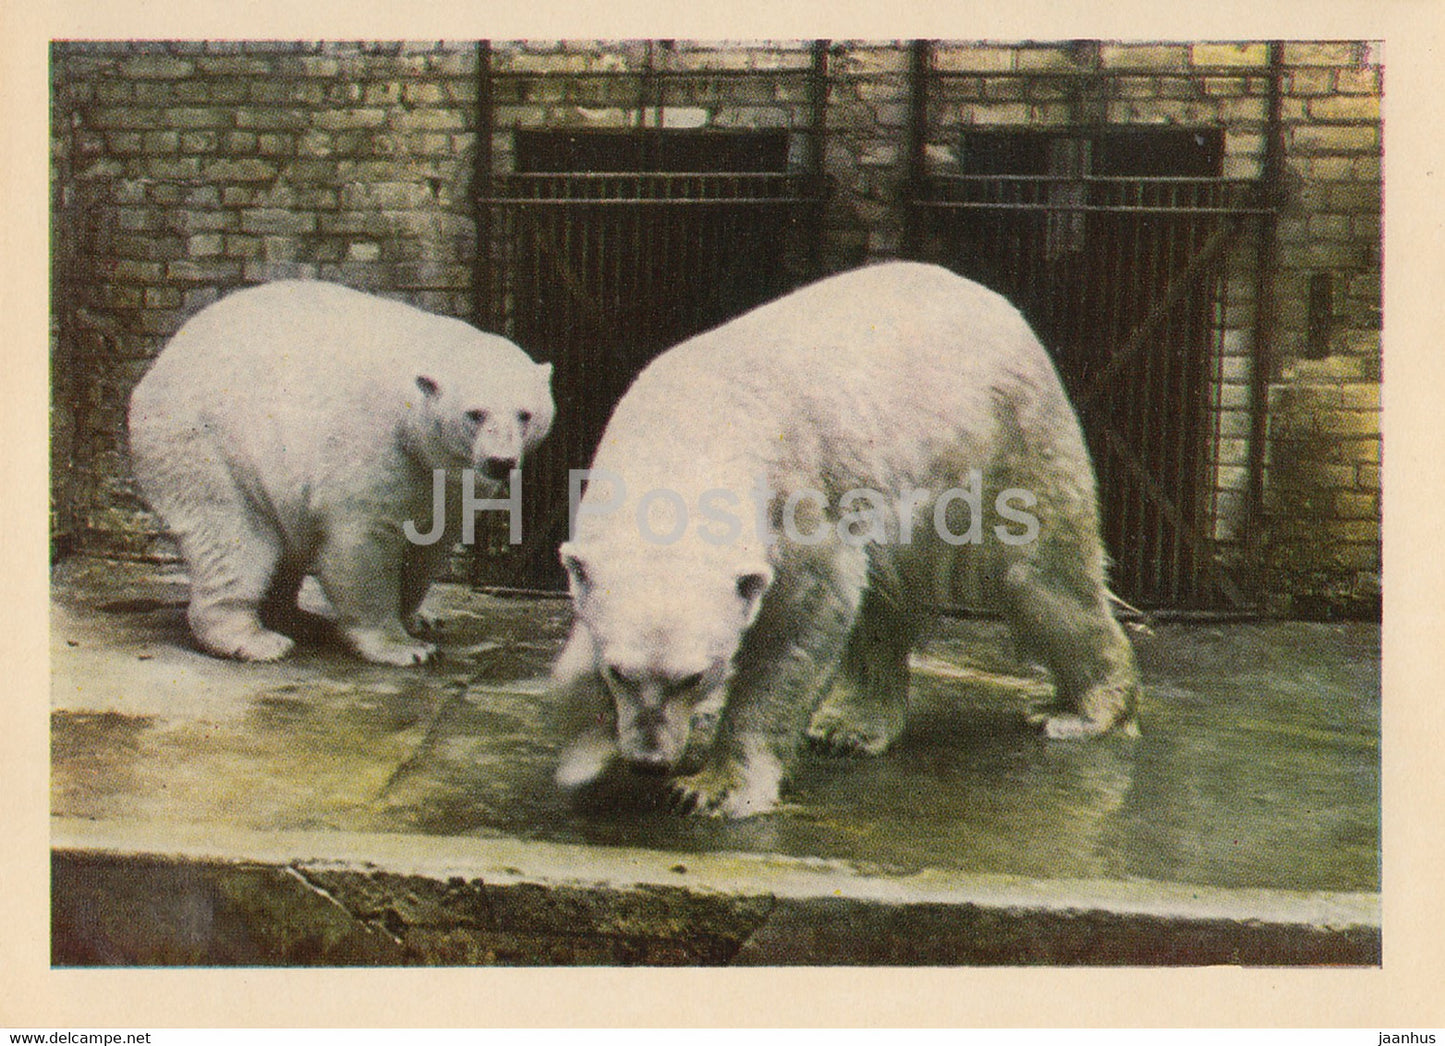 Riga Zoo - Polar bear - Ursus maritimus - Latvia USSR - unused - JH Postcards